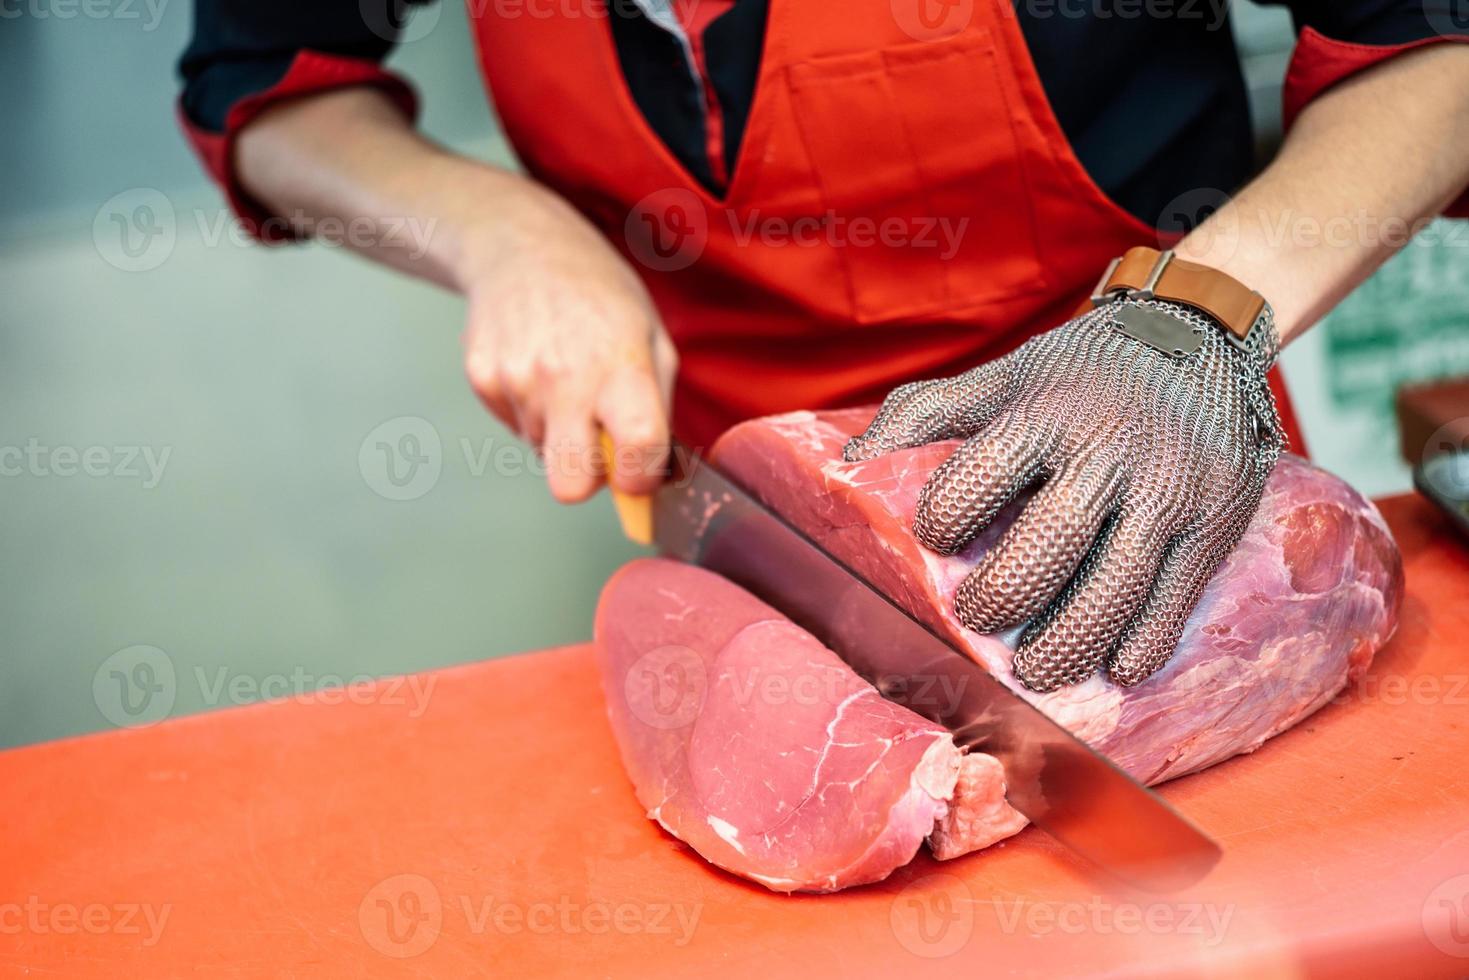 mulher cortando carne fresca em um açougue com luva de malha de segurança de metal foto